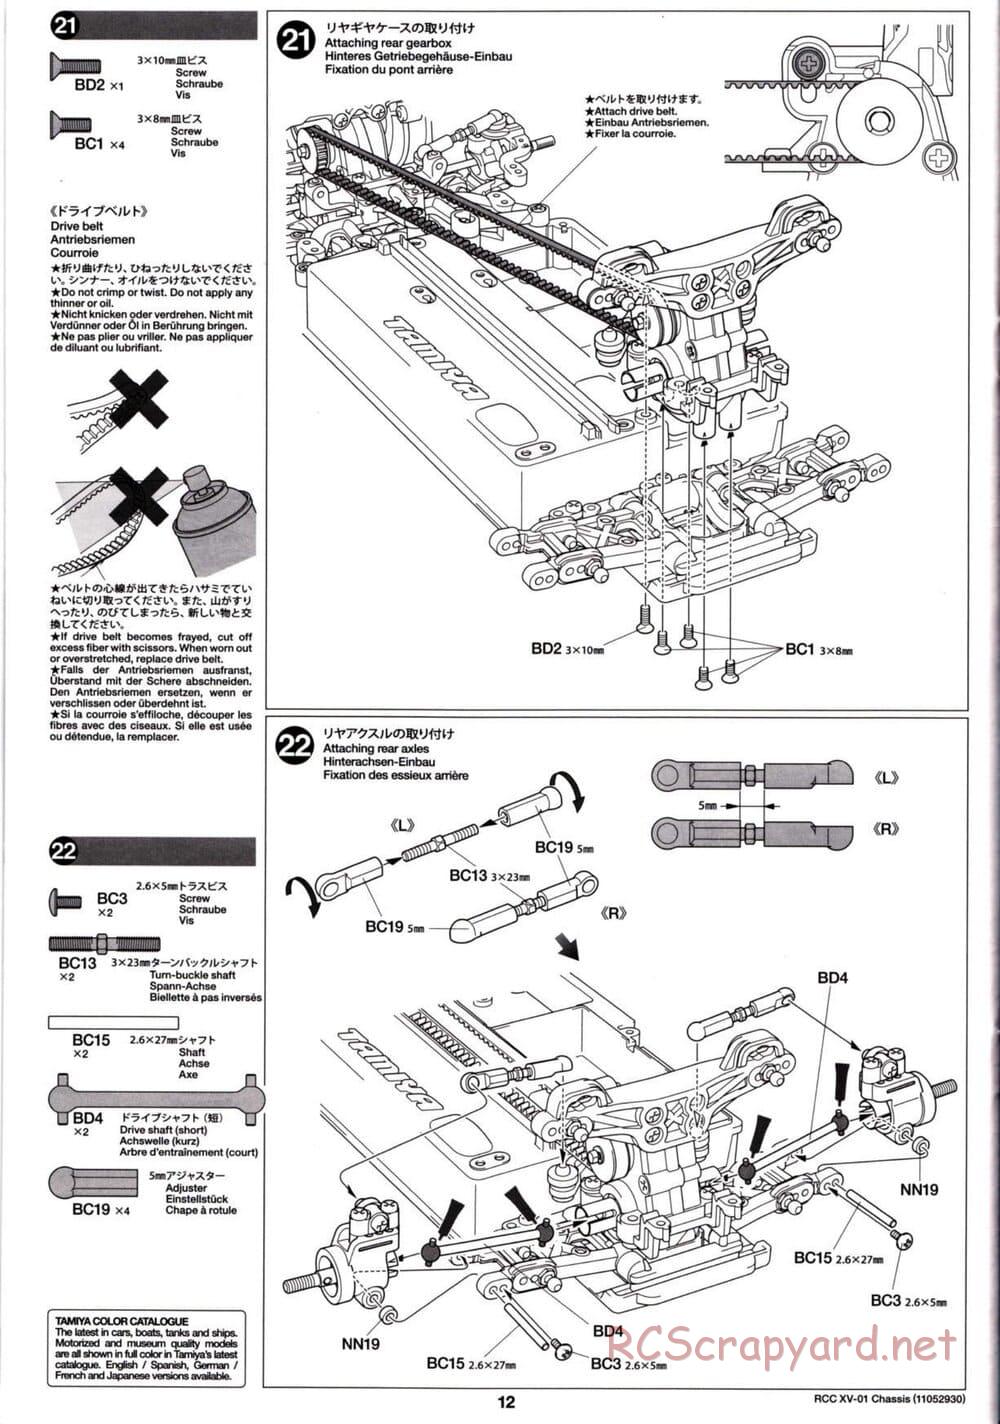 Tamiya - XV-01 Chassis - Manual - Page 12